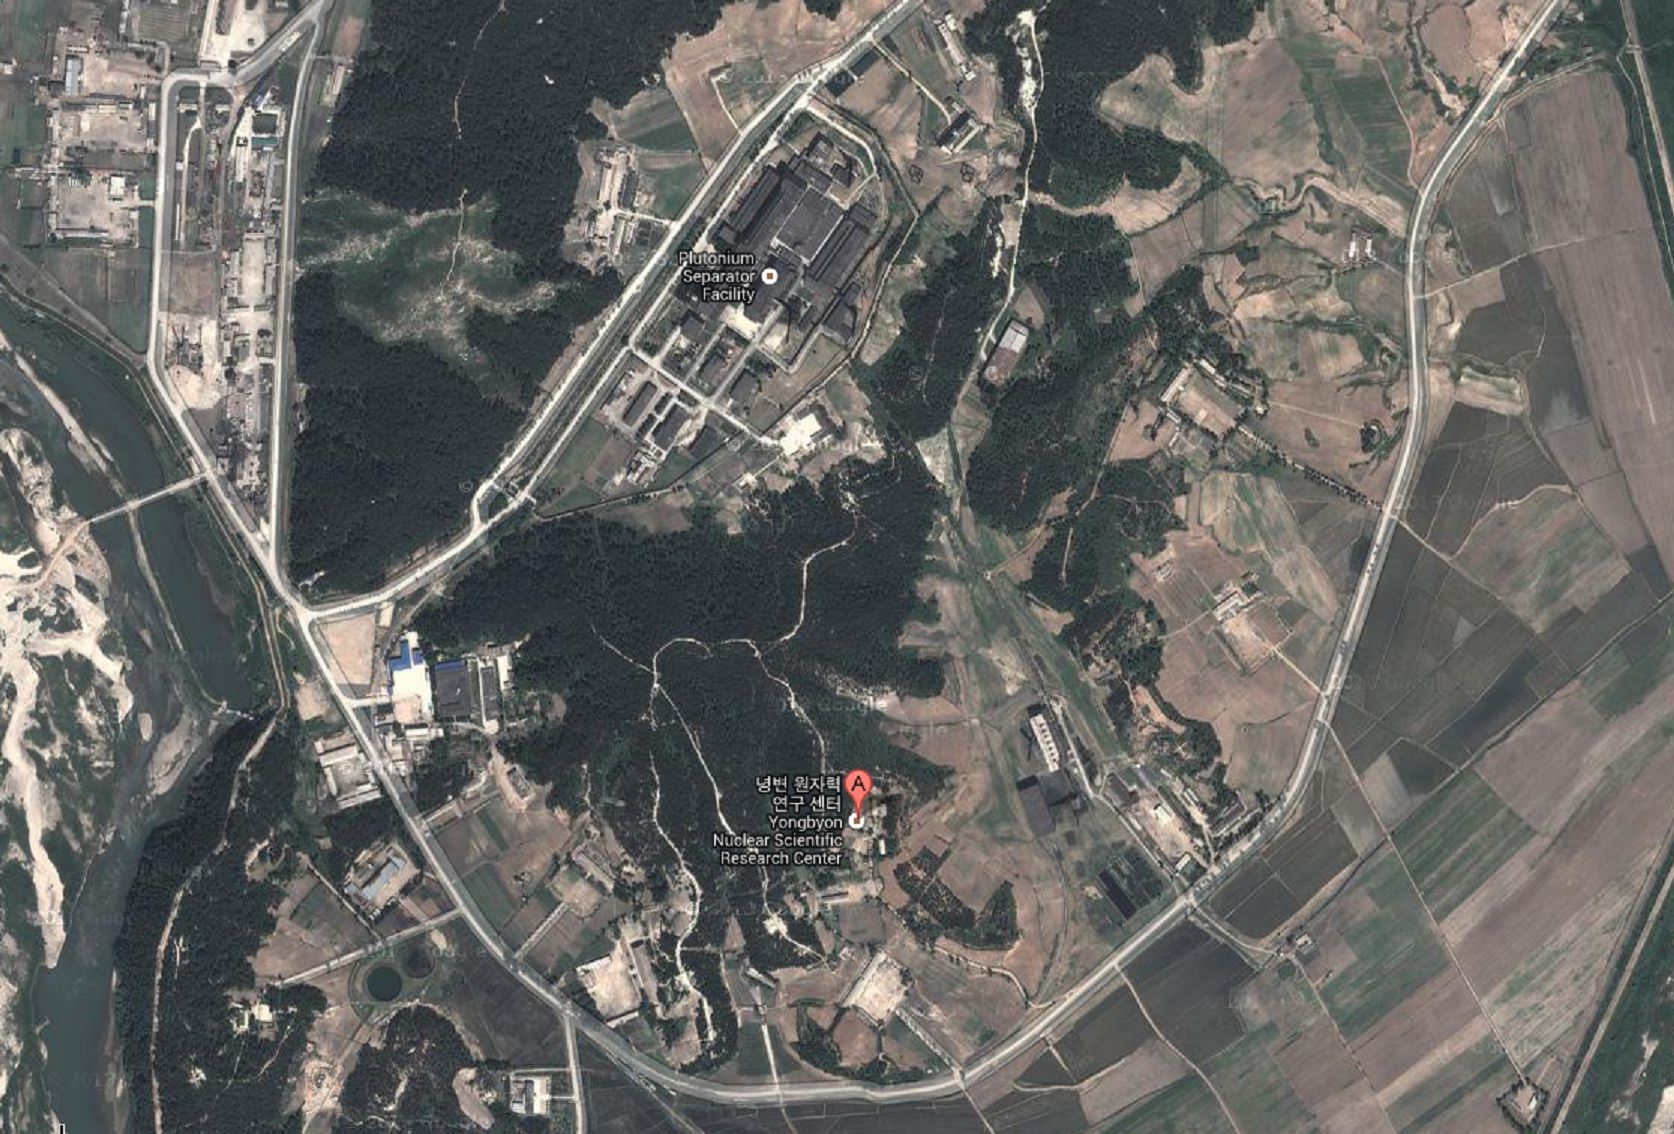 De l'activité a été signalée sur le site de recherche nucléaire nord-coréen de Yongbyon.